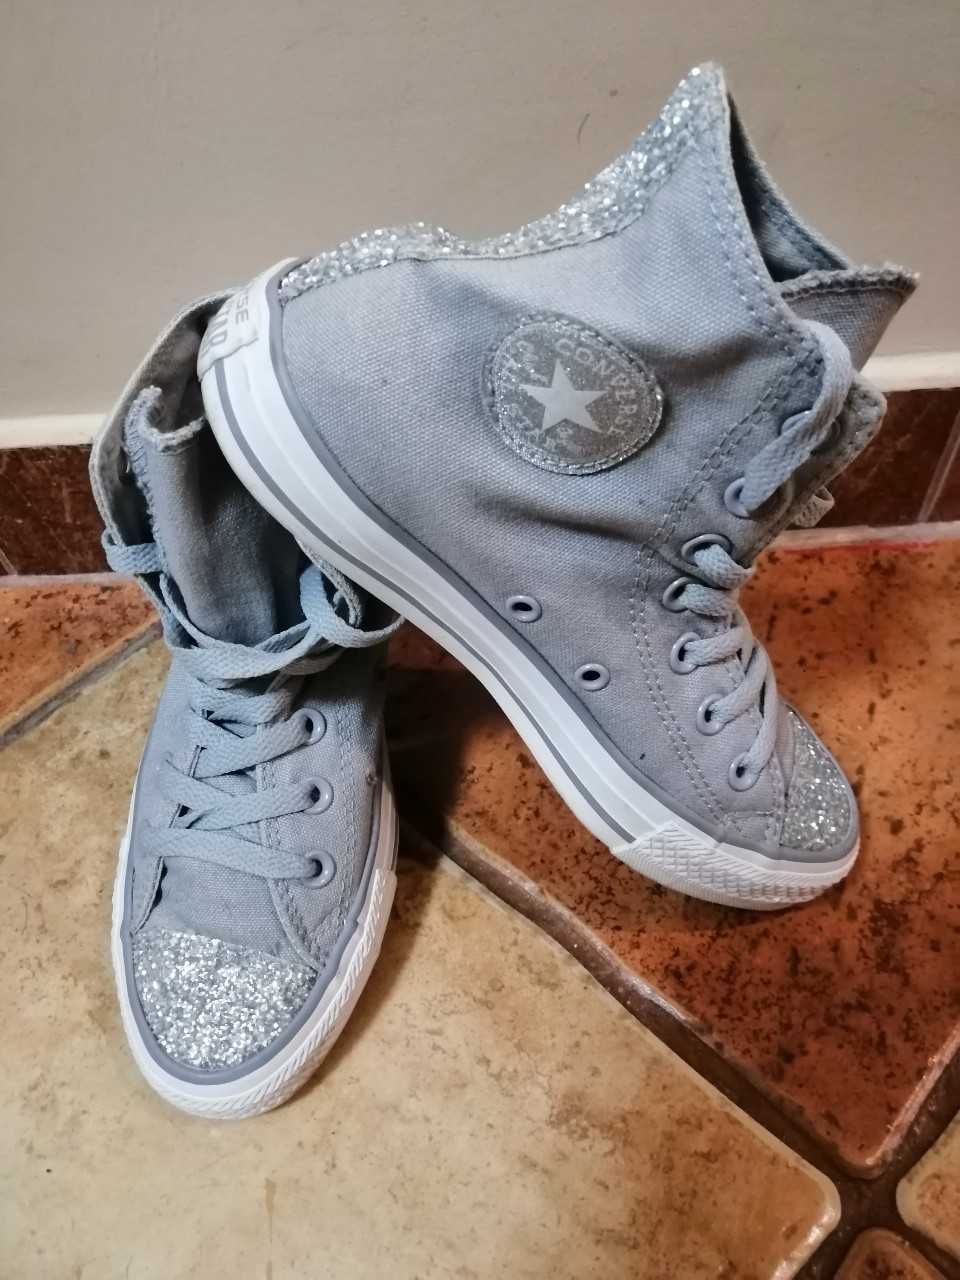 Converse All Star buty damskie rozm. 36,5 wkładka 23,5 cm szare